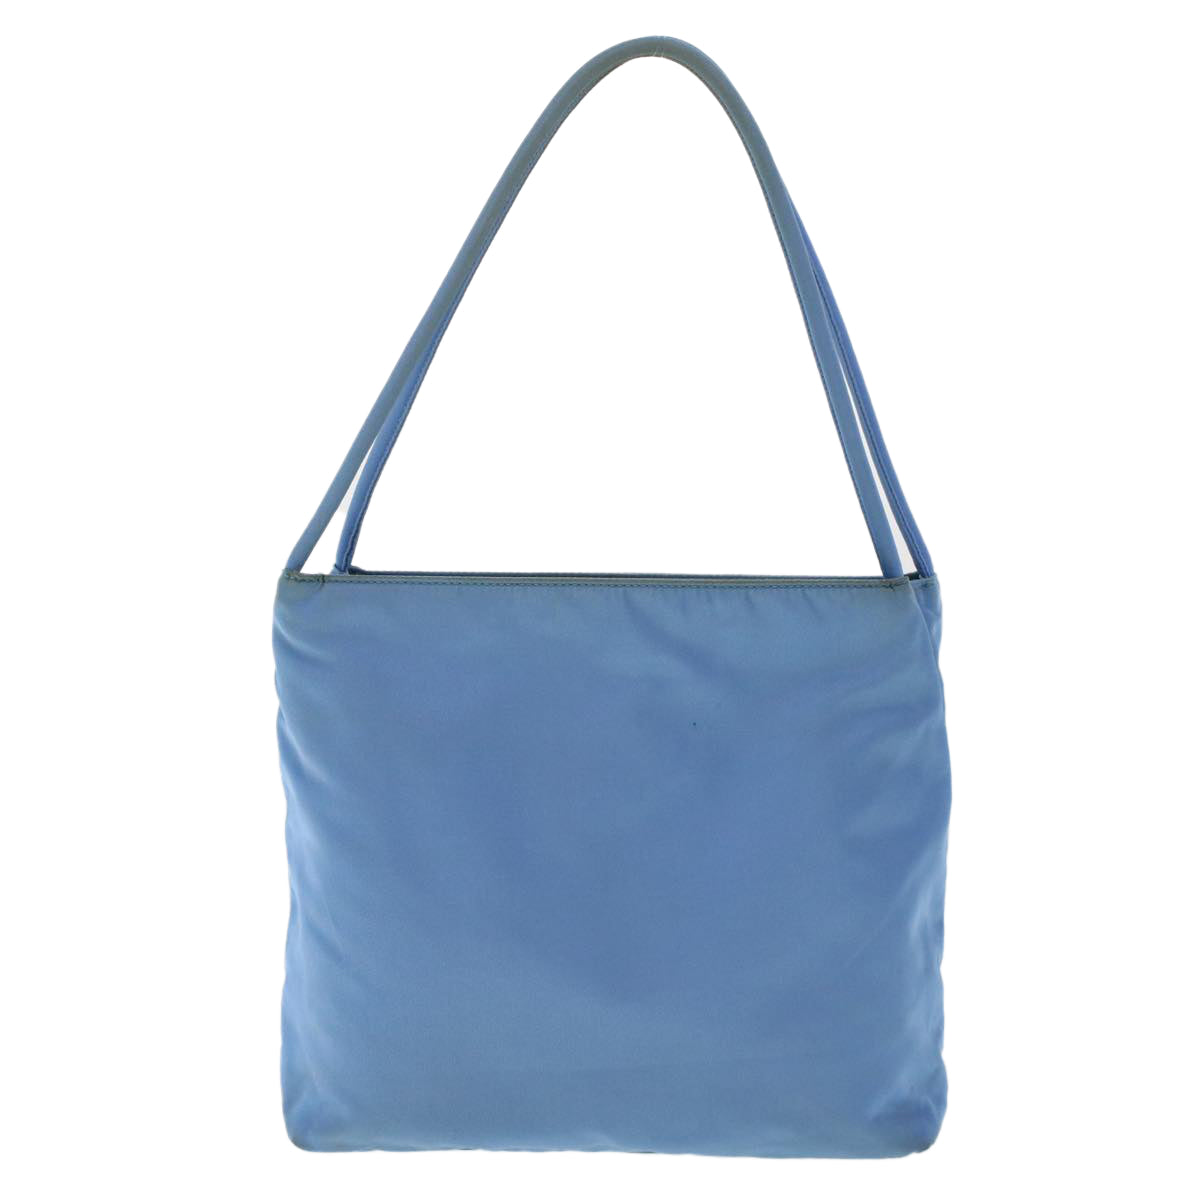 PRADA Hand Bag Nylon Light Blue Auth 49028 - 0